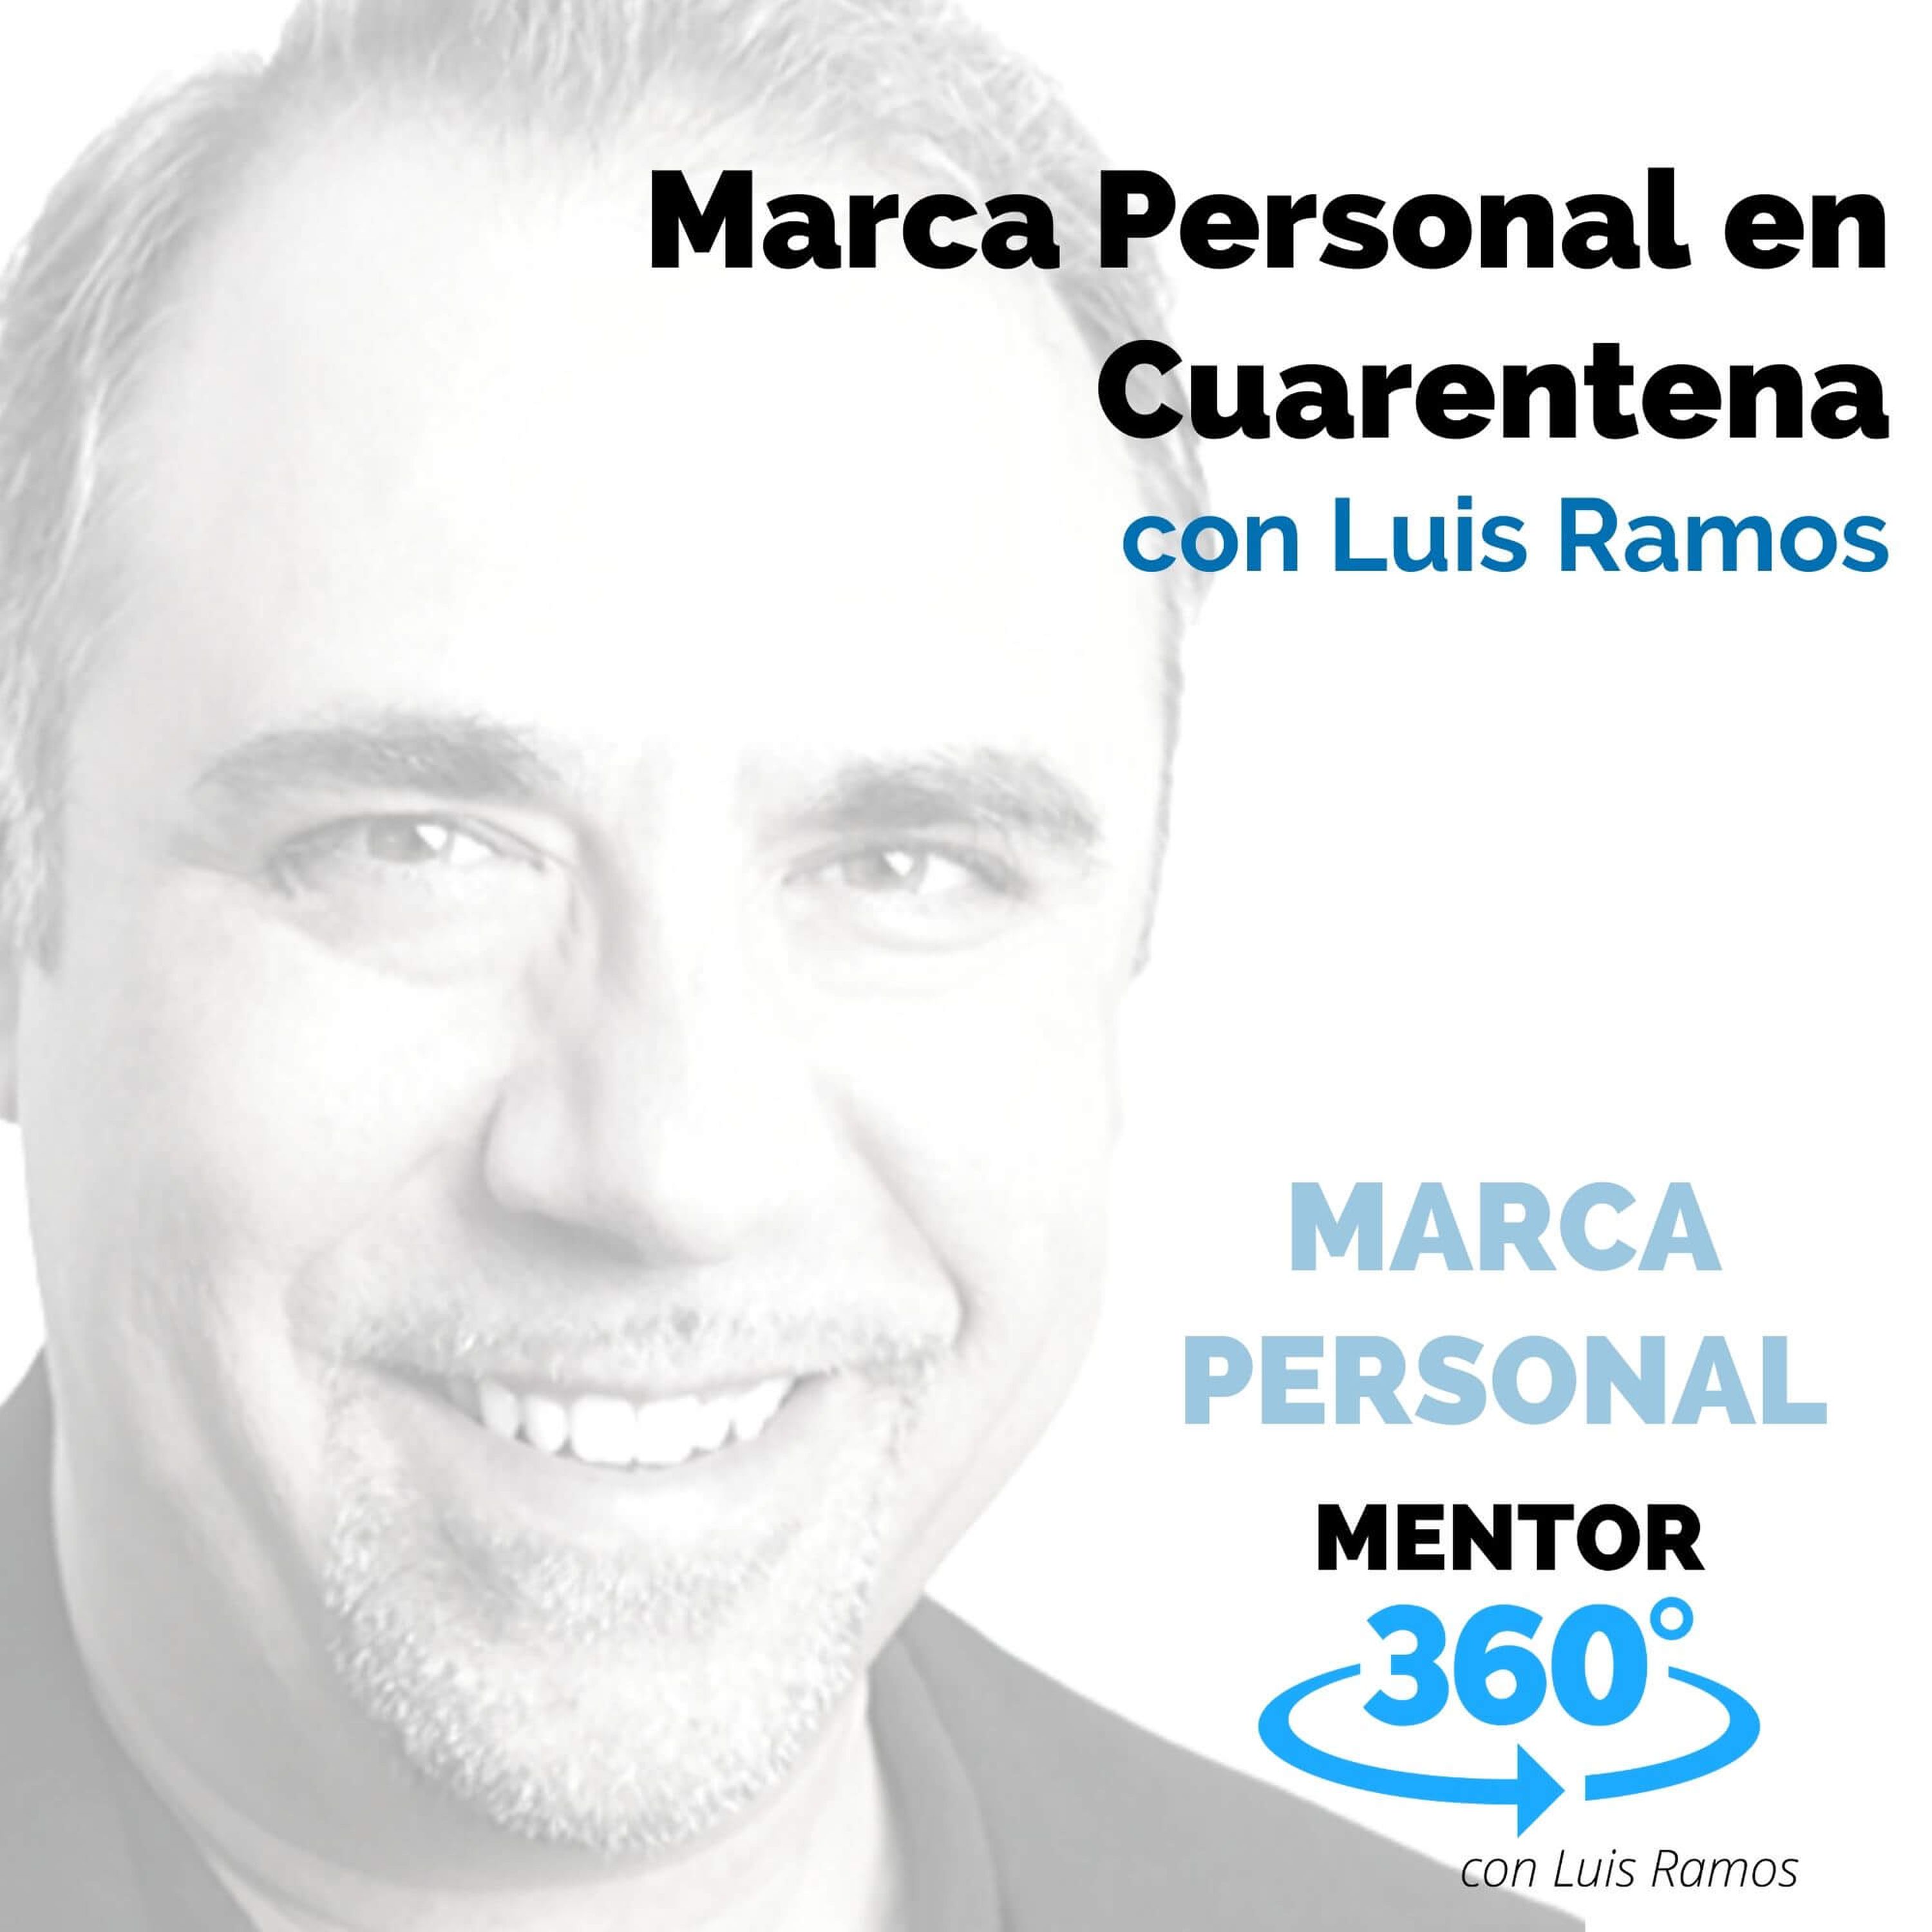 Marca personal en cuarentena, con Luis Ramos - MARCA PERSONAL